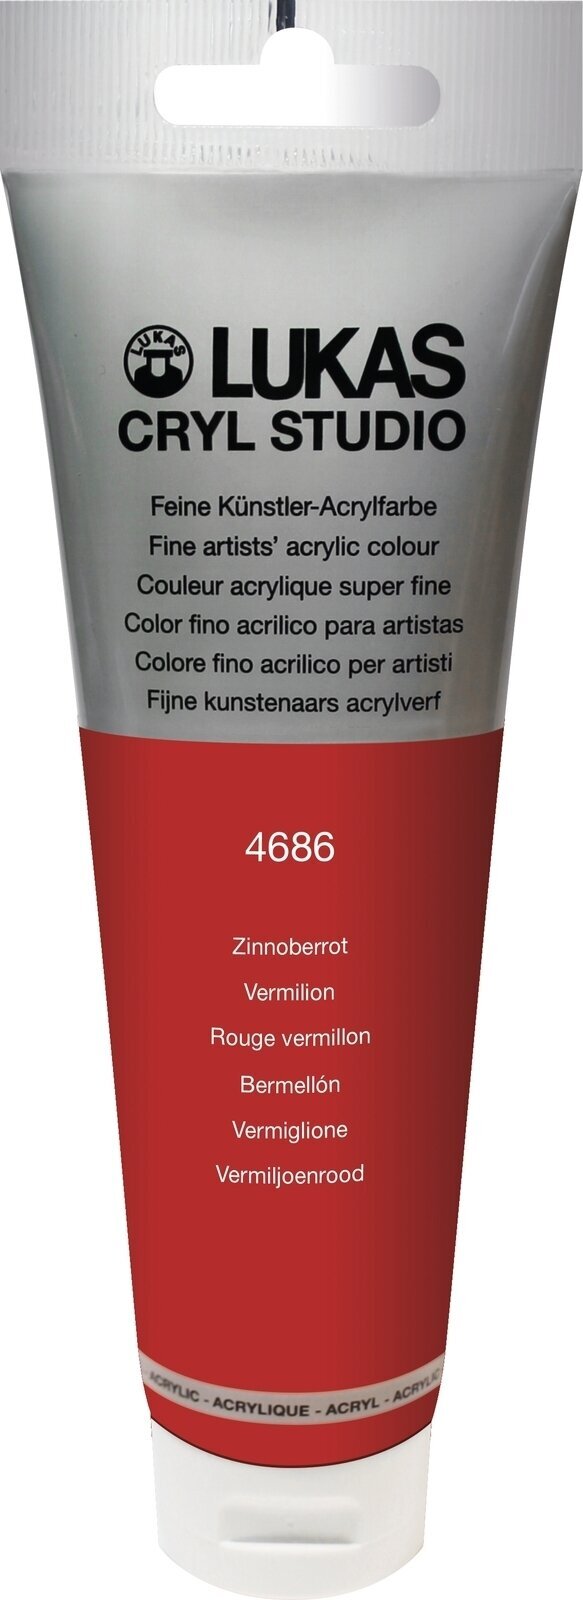 Tinta acrílica Lukas Cryl Studio Acrylic Paint Plastic Tube Tinta acrílica Vermilion 125 ml 1 un.